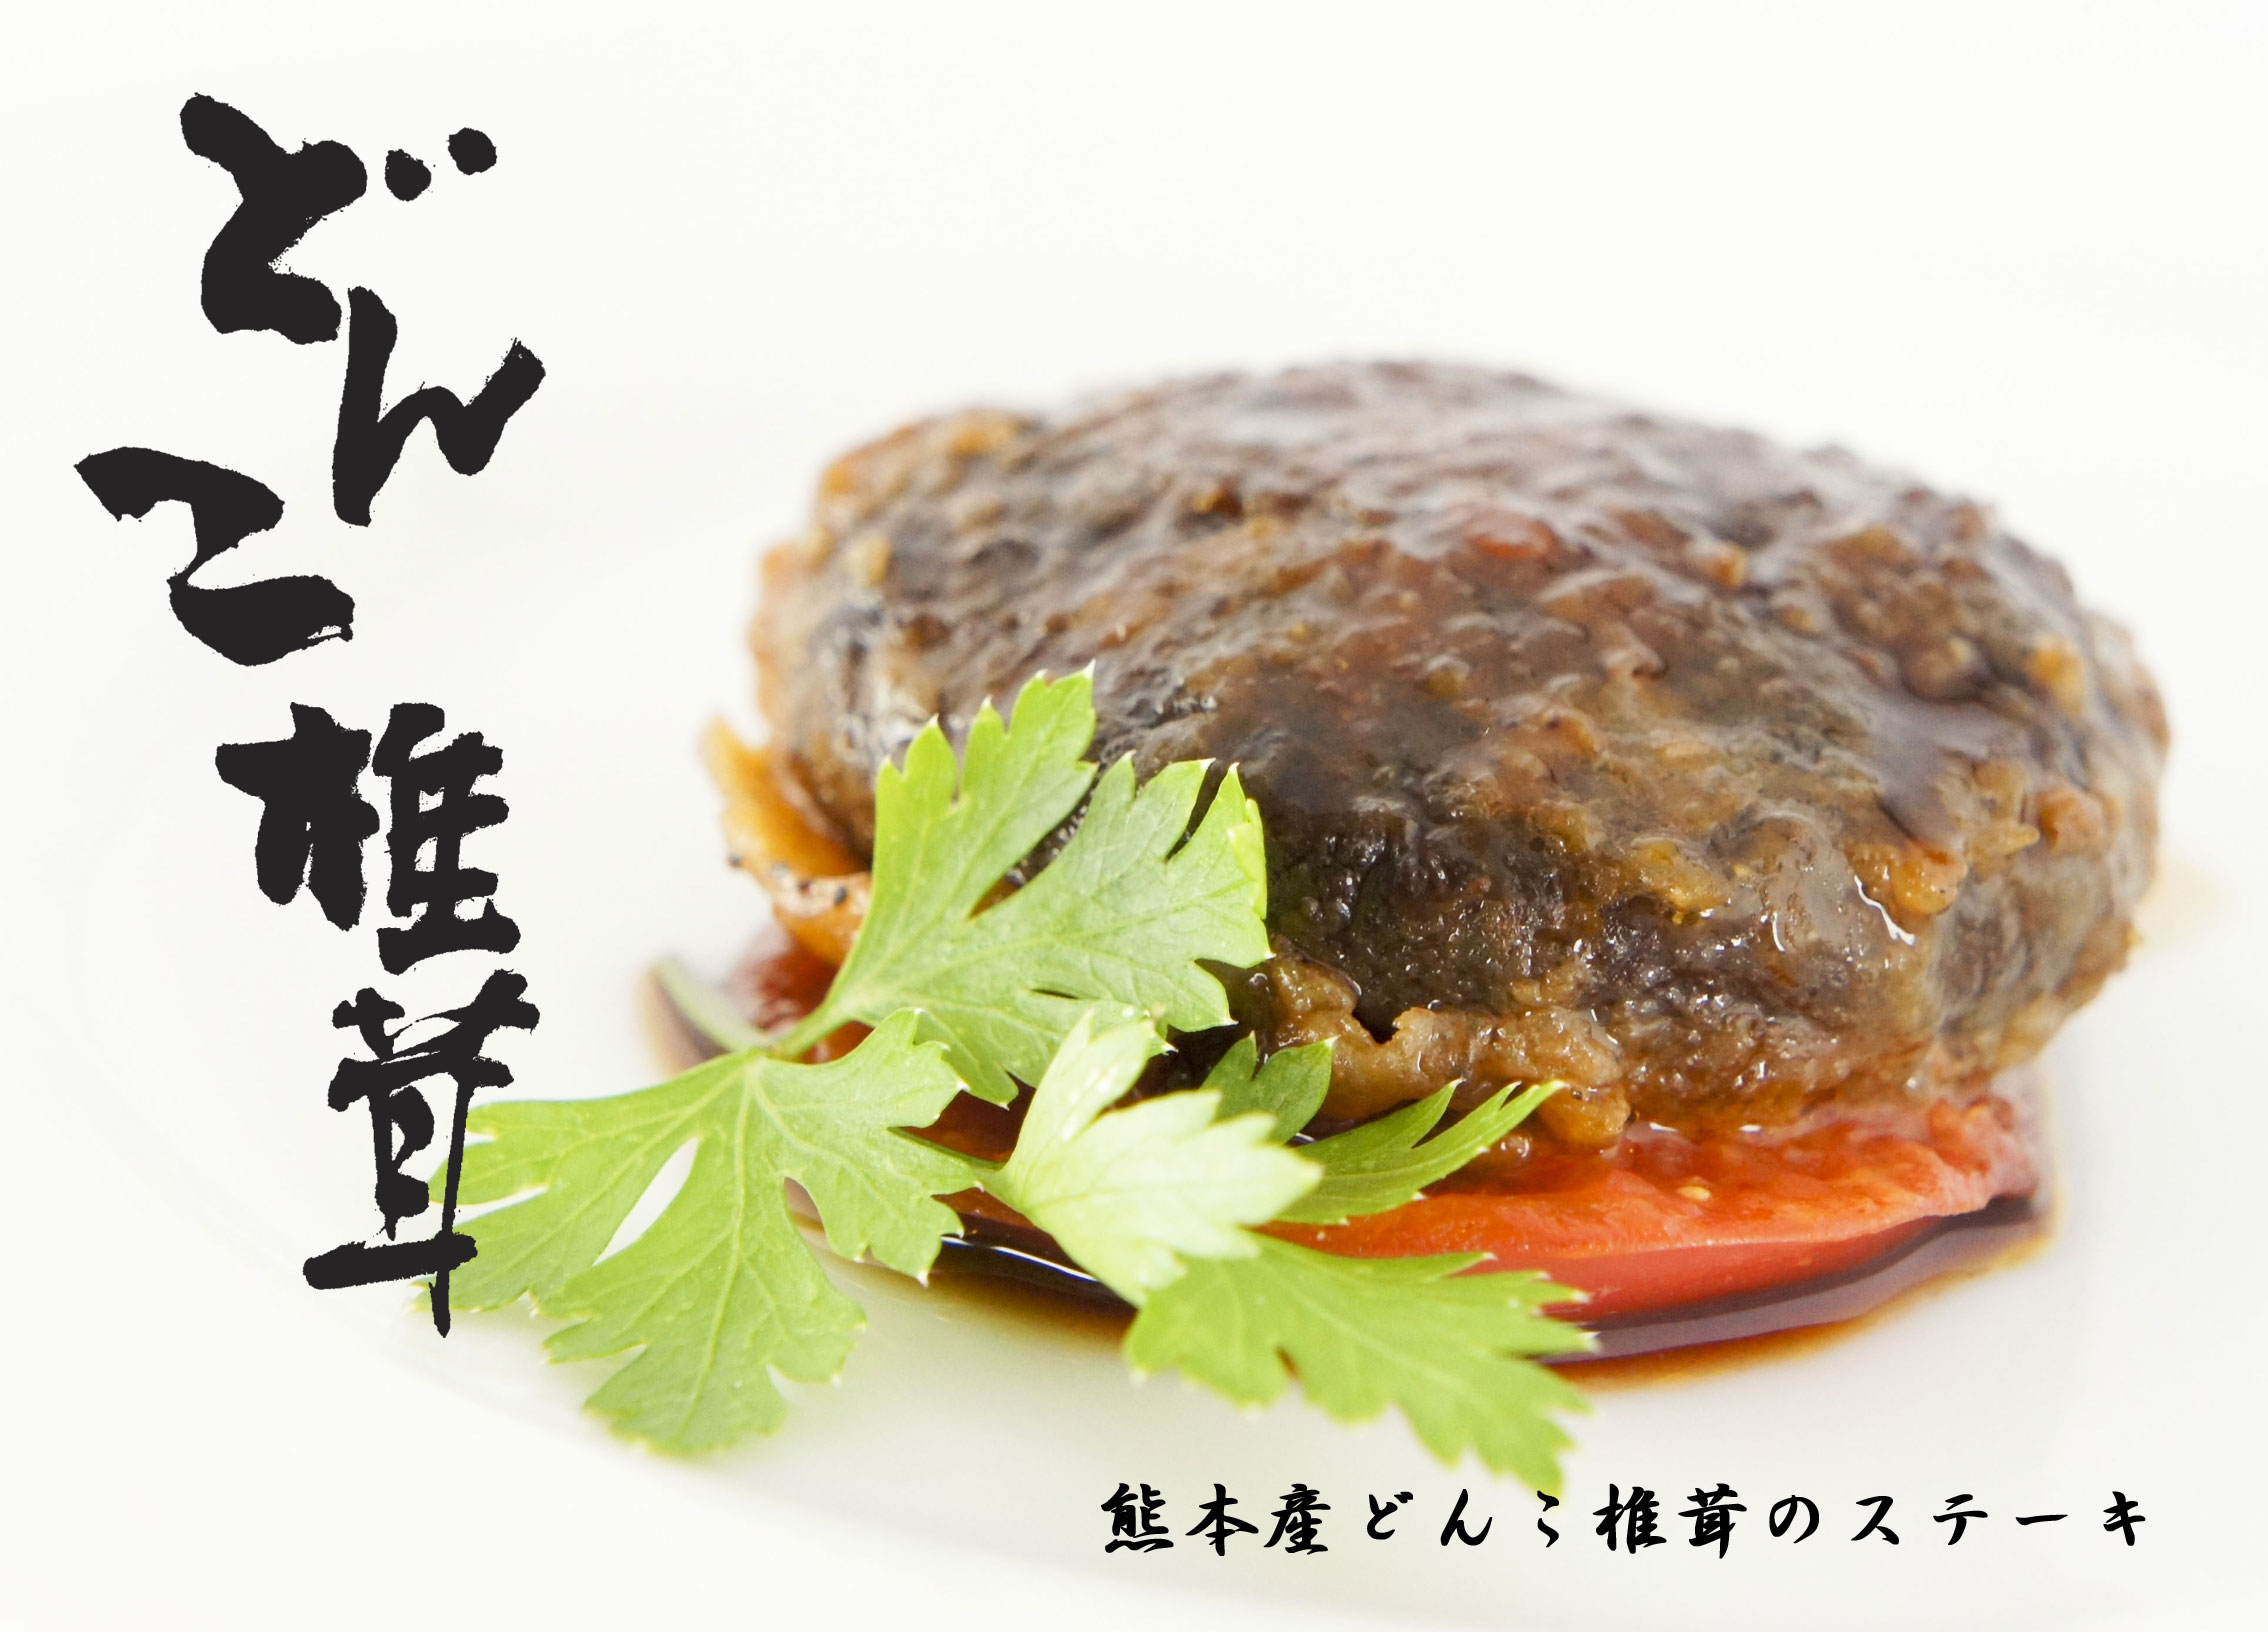 阿蘇山を有する熊本県で栽培された、肉質が厚く歯ごたえがあり、こくのある味わいのどんこ椎茸です。